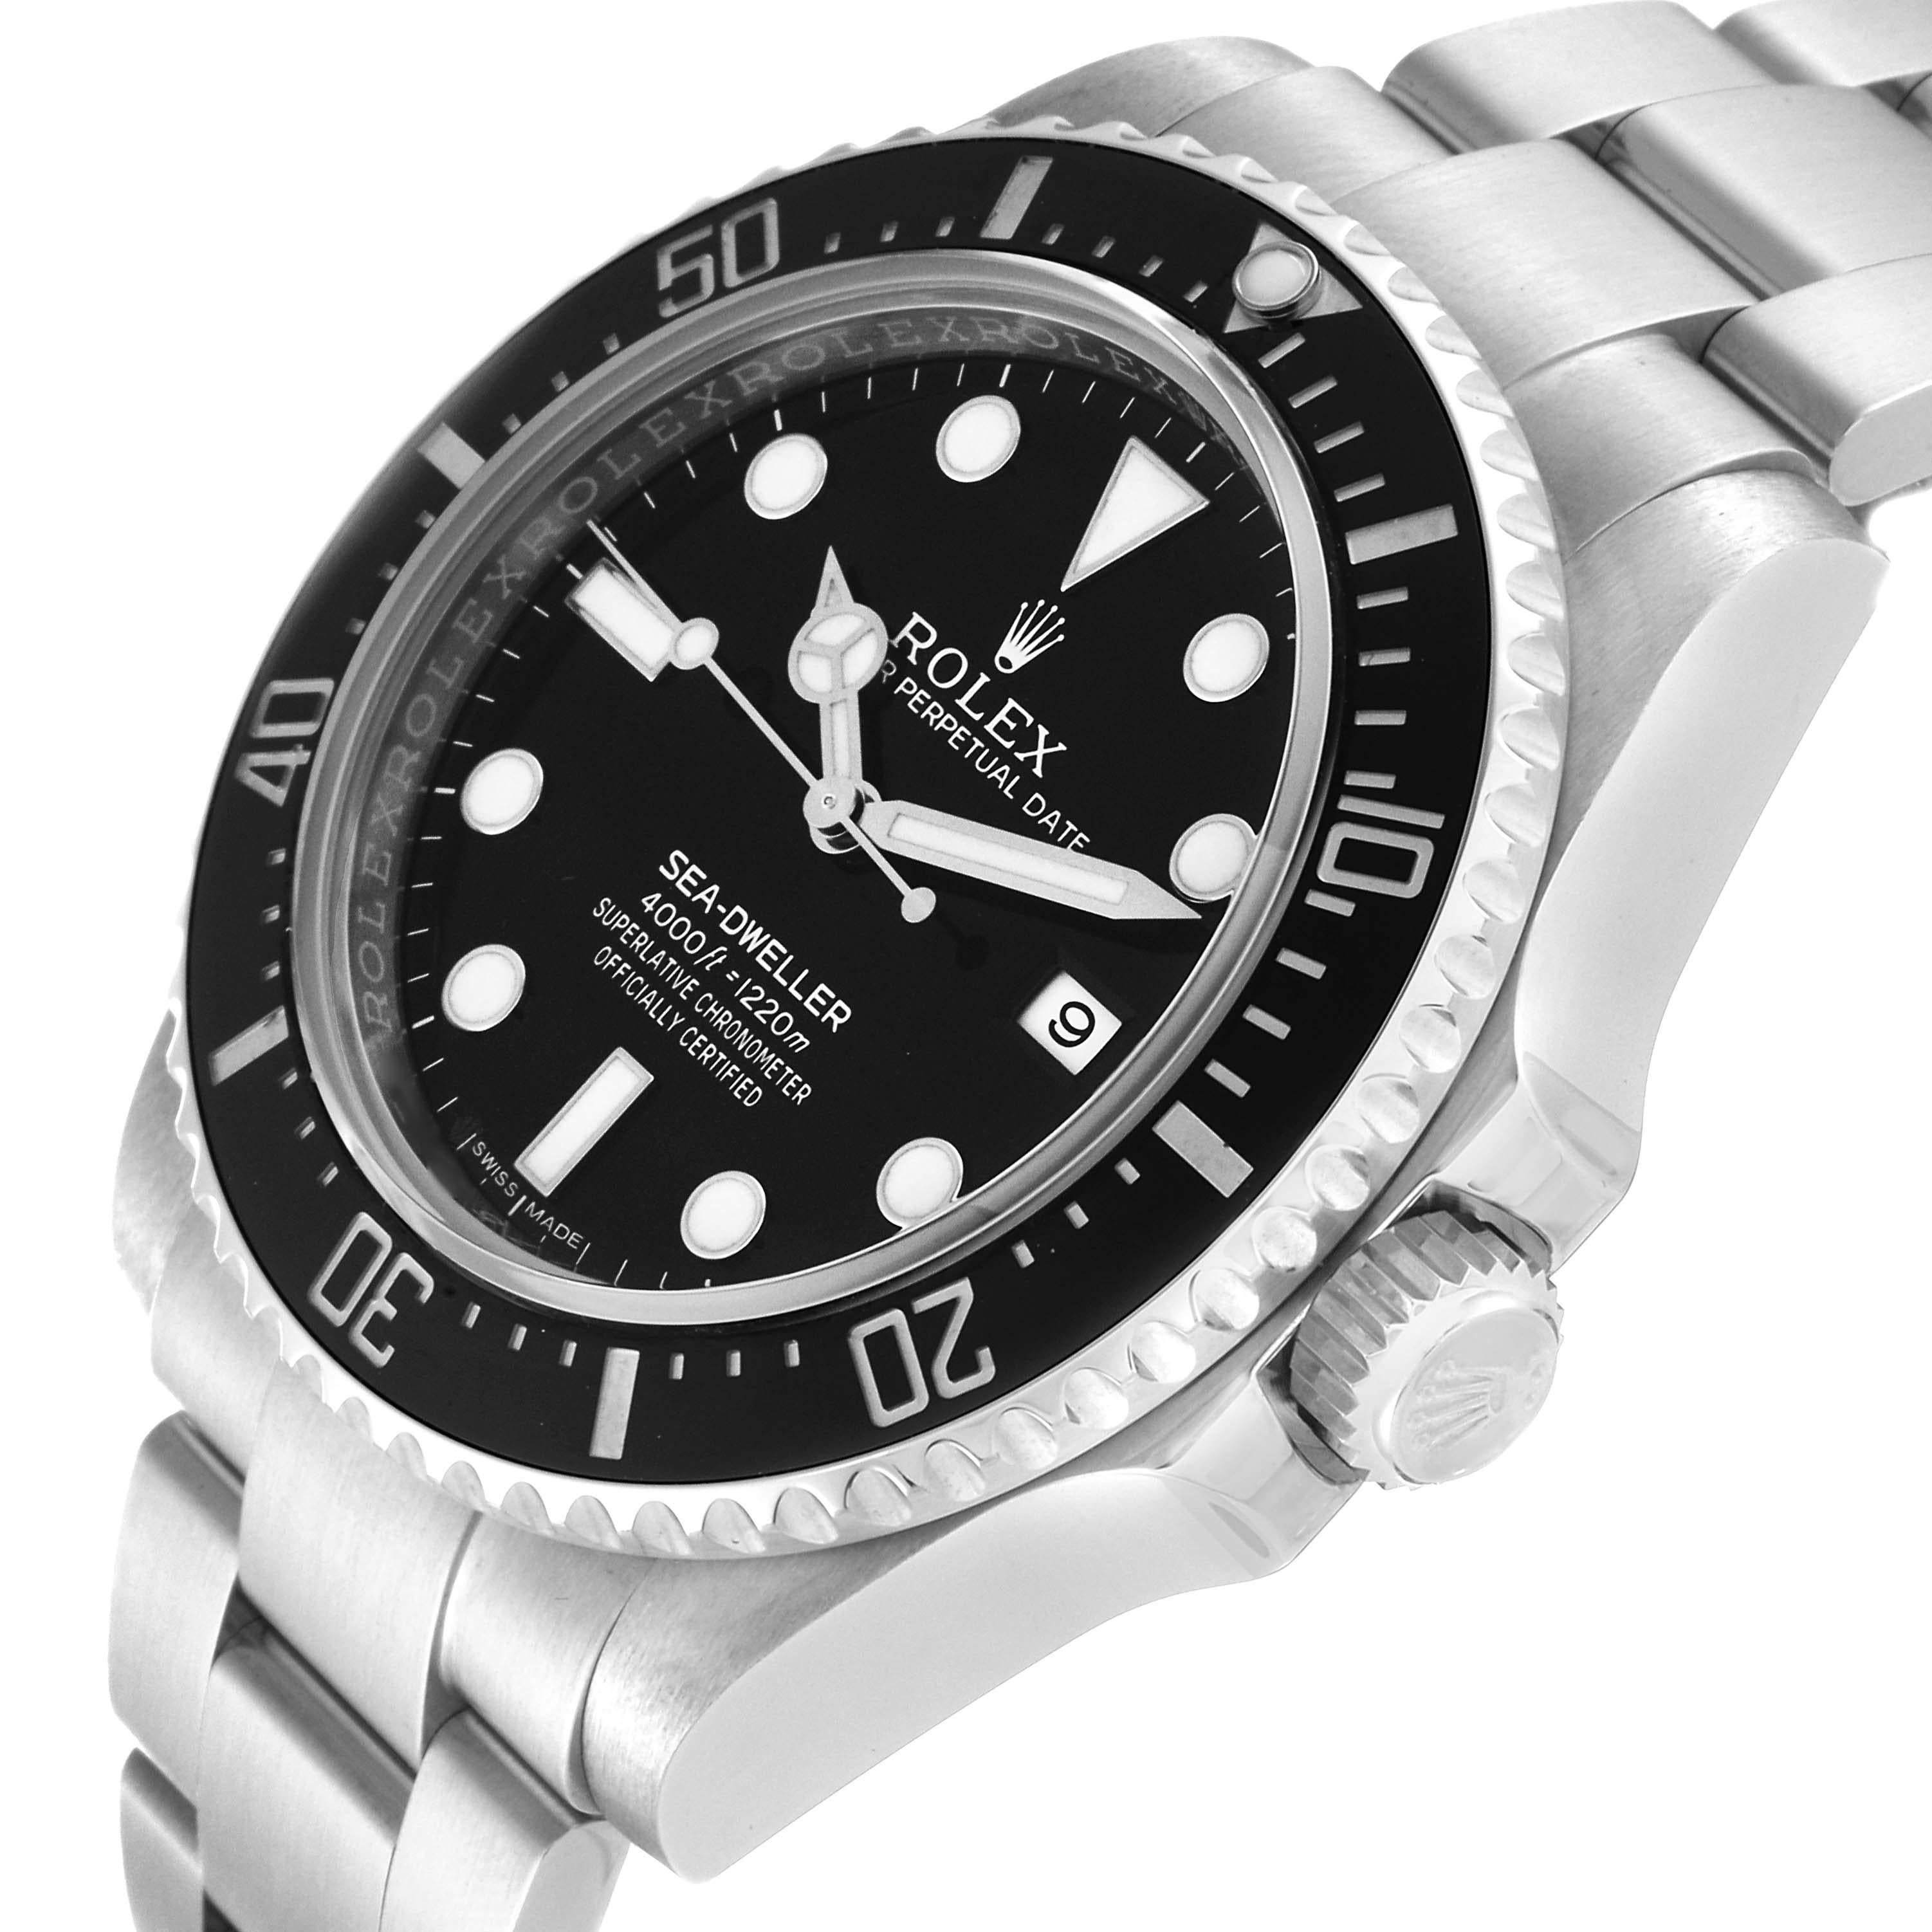 Rolex Seadweller 4000 Black Dial Automatic Steel Mens Watch 116600. Mouvement automatique à remontage automatique, officiellement certifié chronomètre. Boîtier oyster en acier inoxydable de 40.0 mm de diamètre. Logo Rolex sur une couronne. Lunette